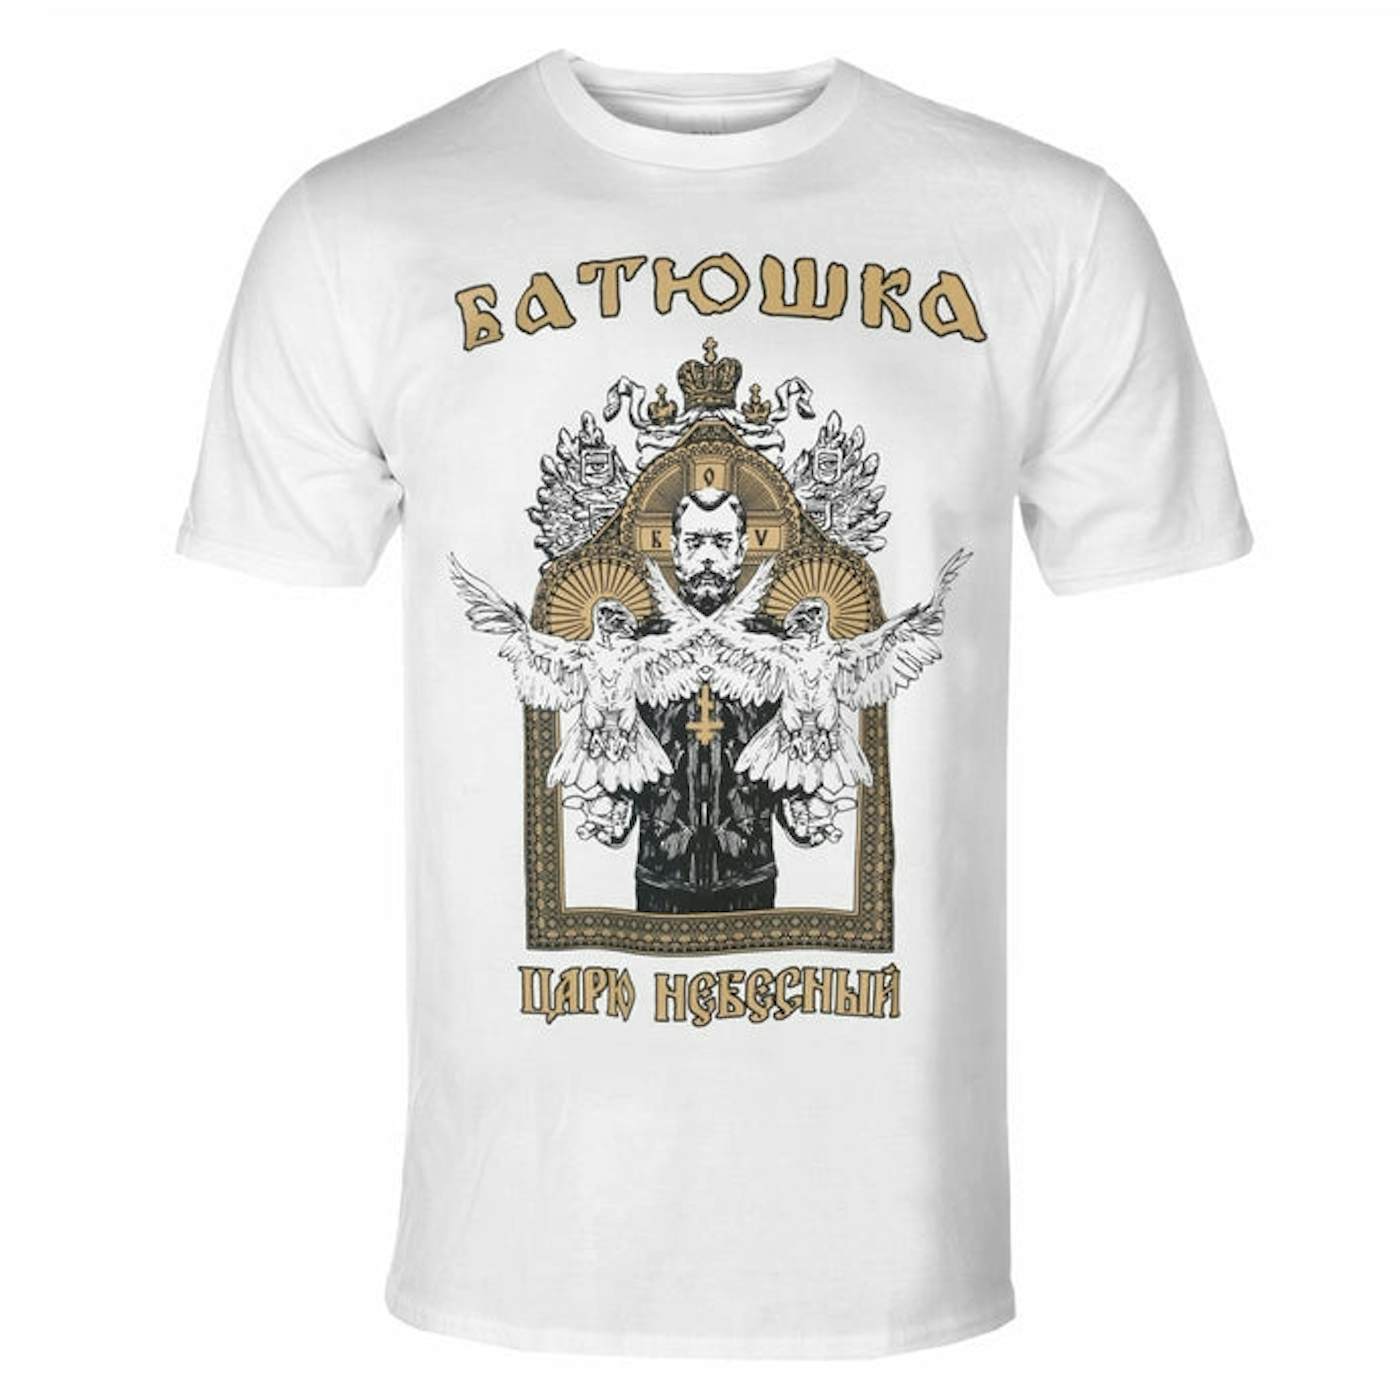 Batushka T Shirt - Carju Niebiesnyj (White)